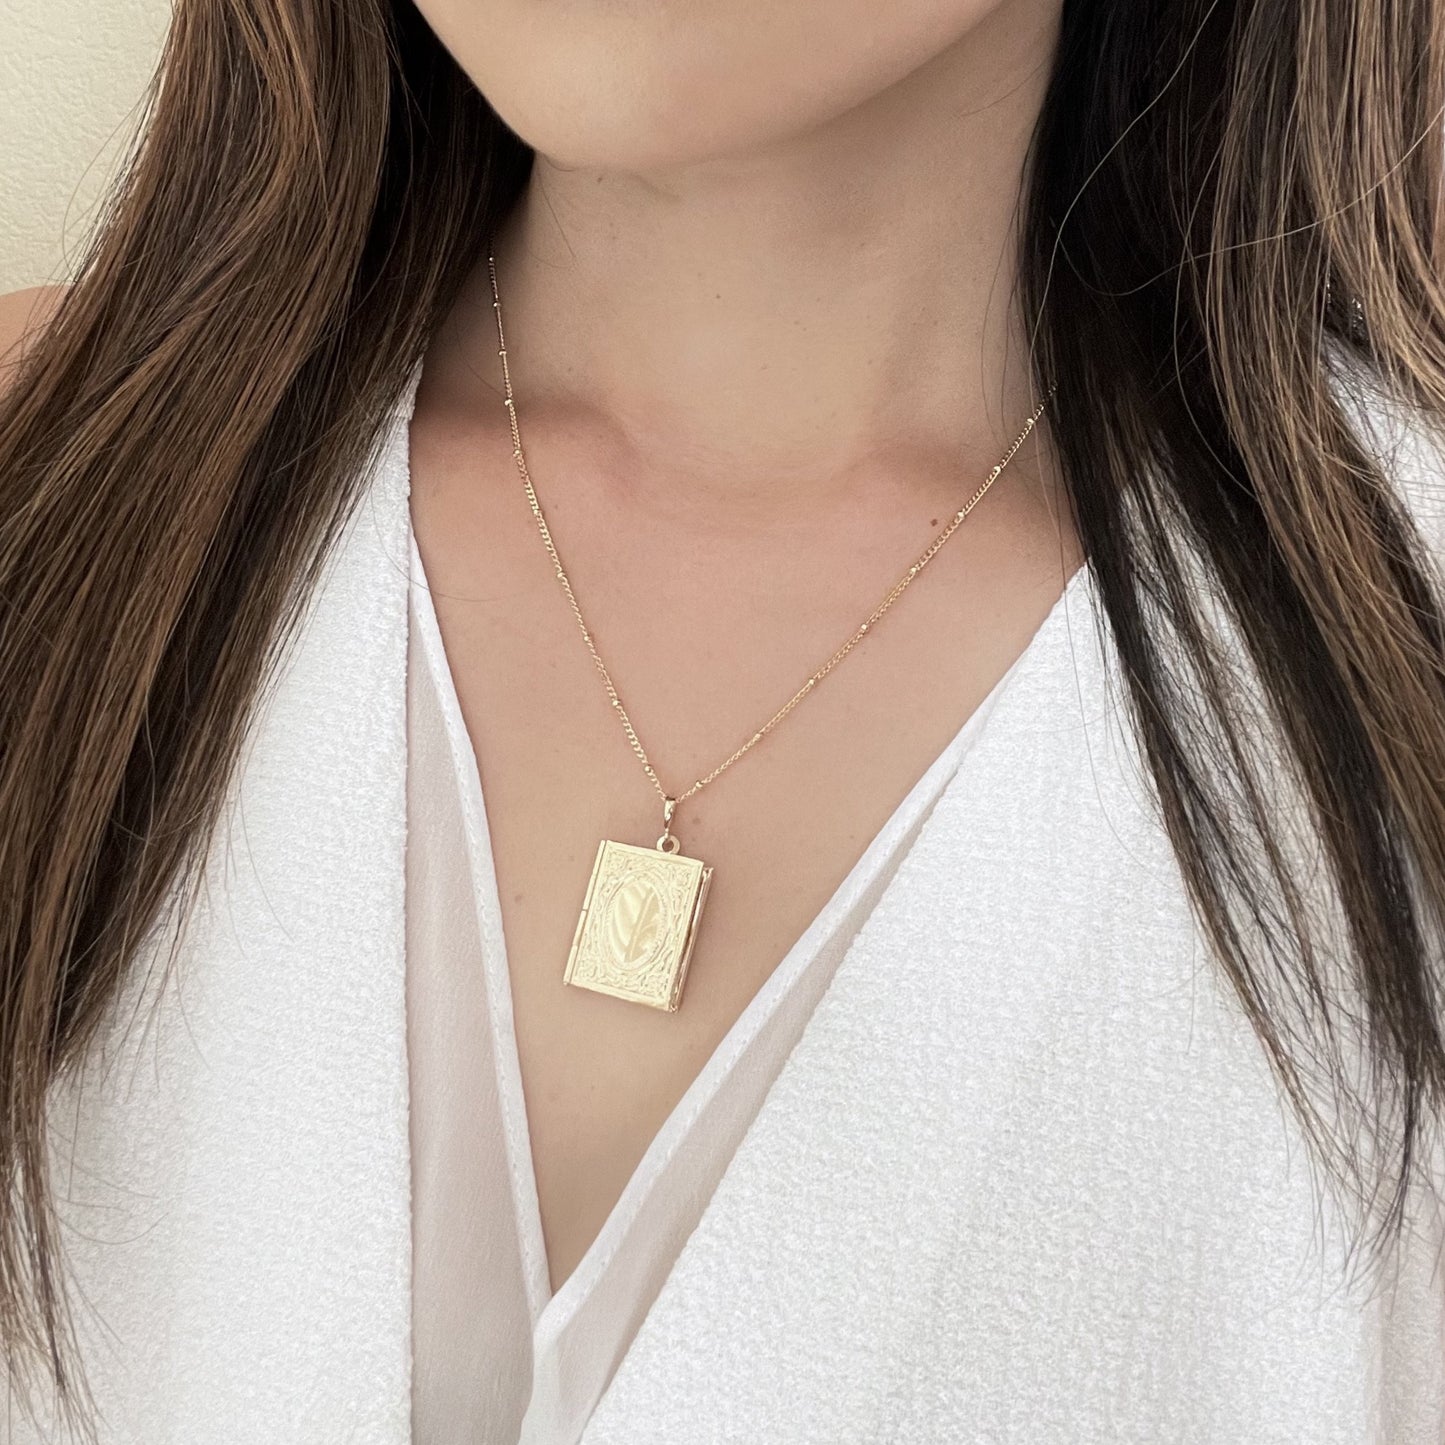 Woman wearing gold rectangular locket necklace